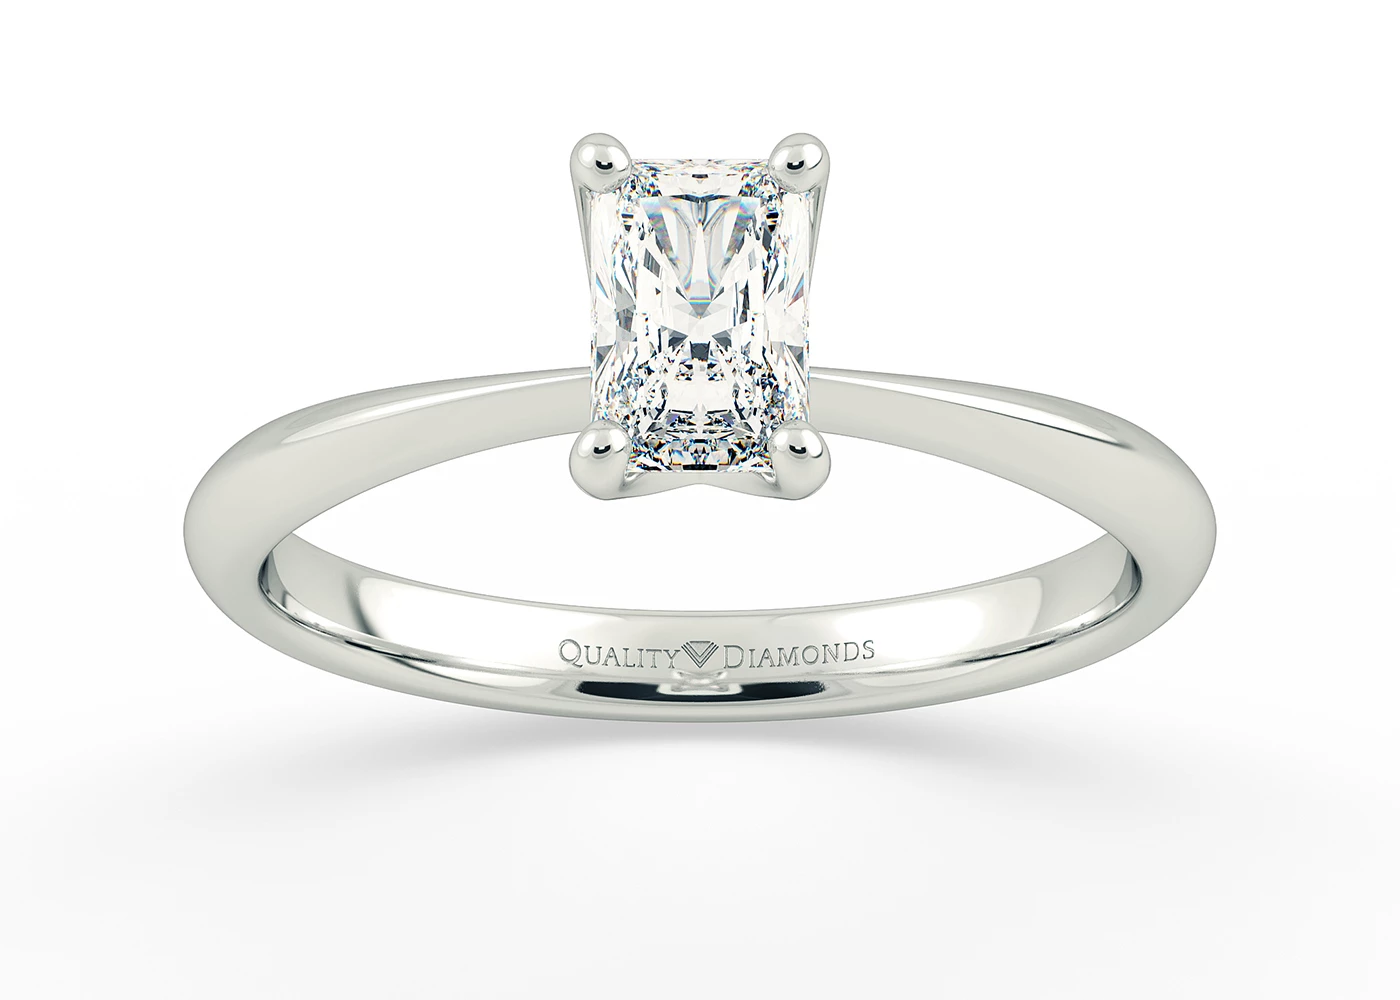 Radiant Amorette Diamond Ring in Platinum